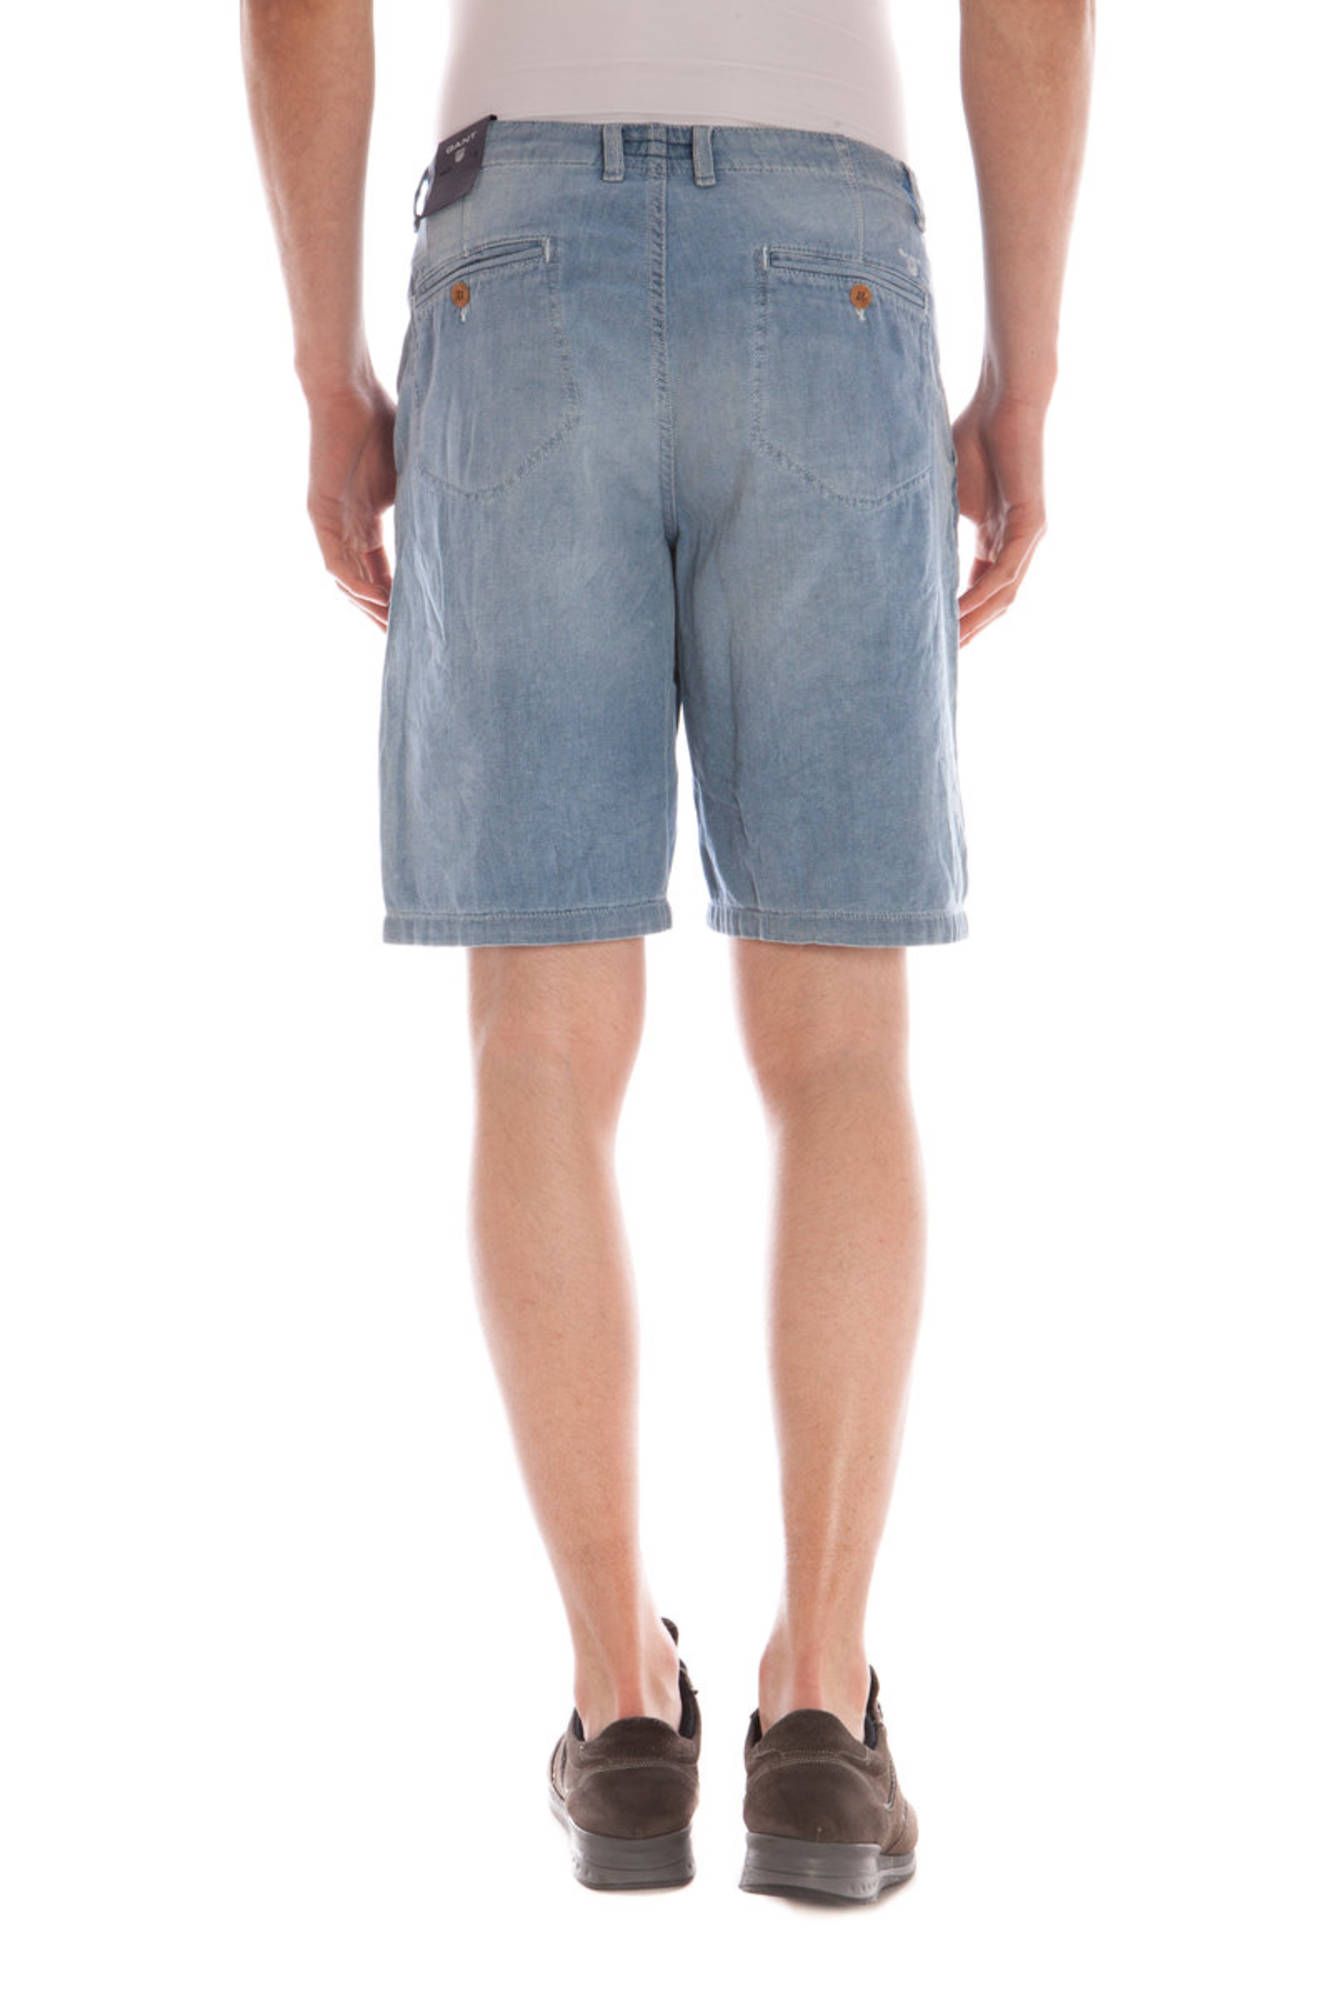 Jeans Bermuda Uomo Ventis Uomo Abbigliamento Pantaloni e jeans Shorts Pantaloncini 